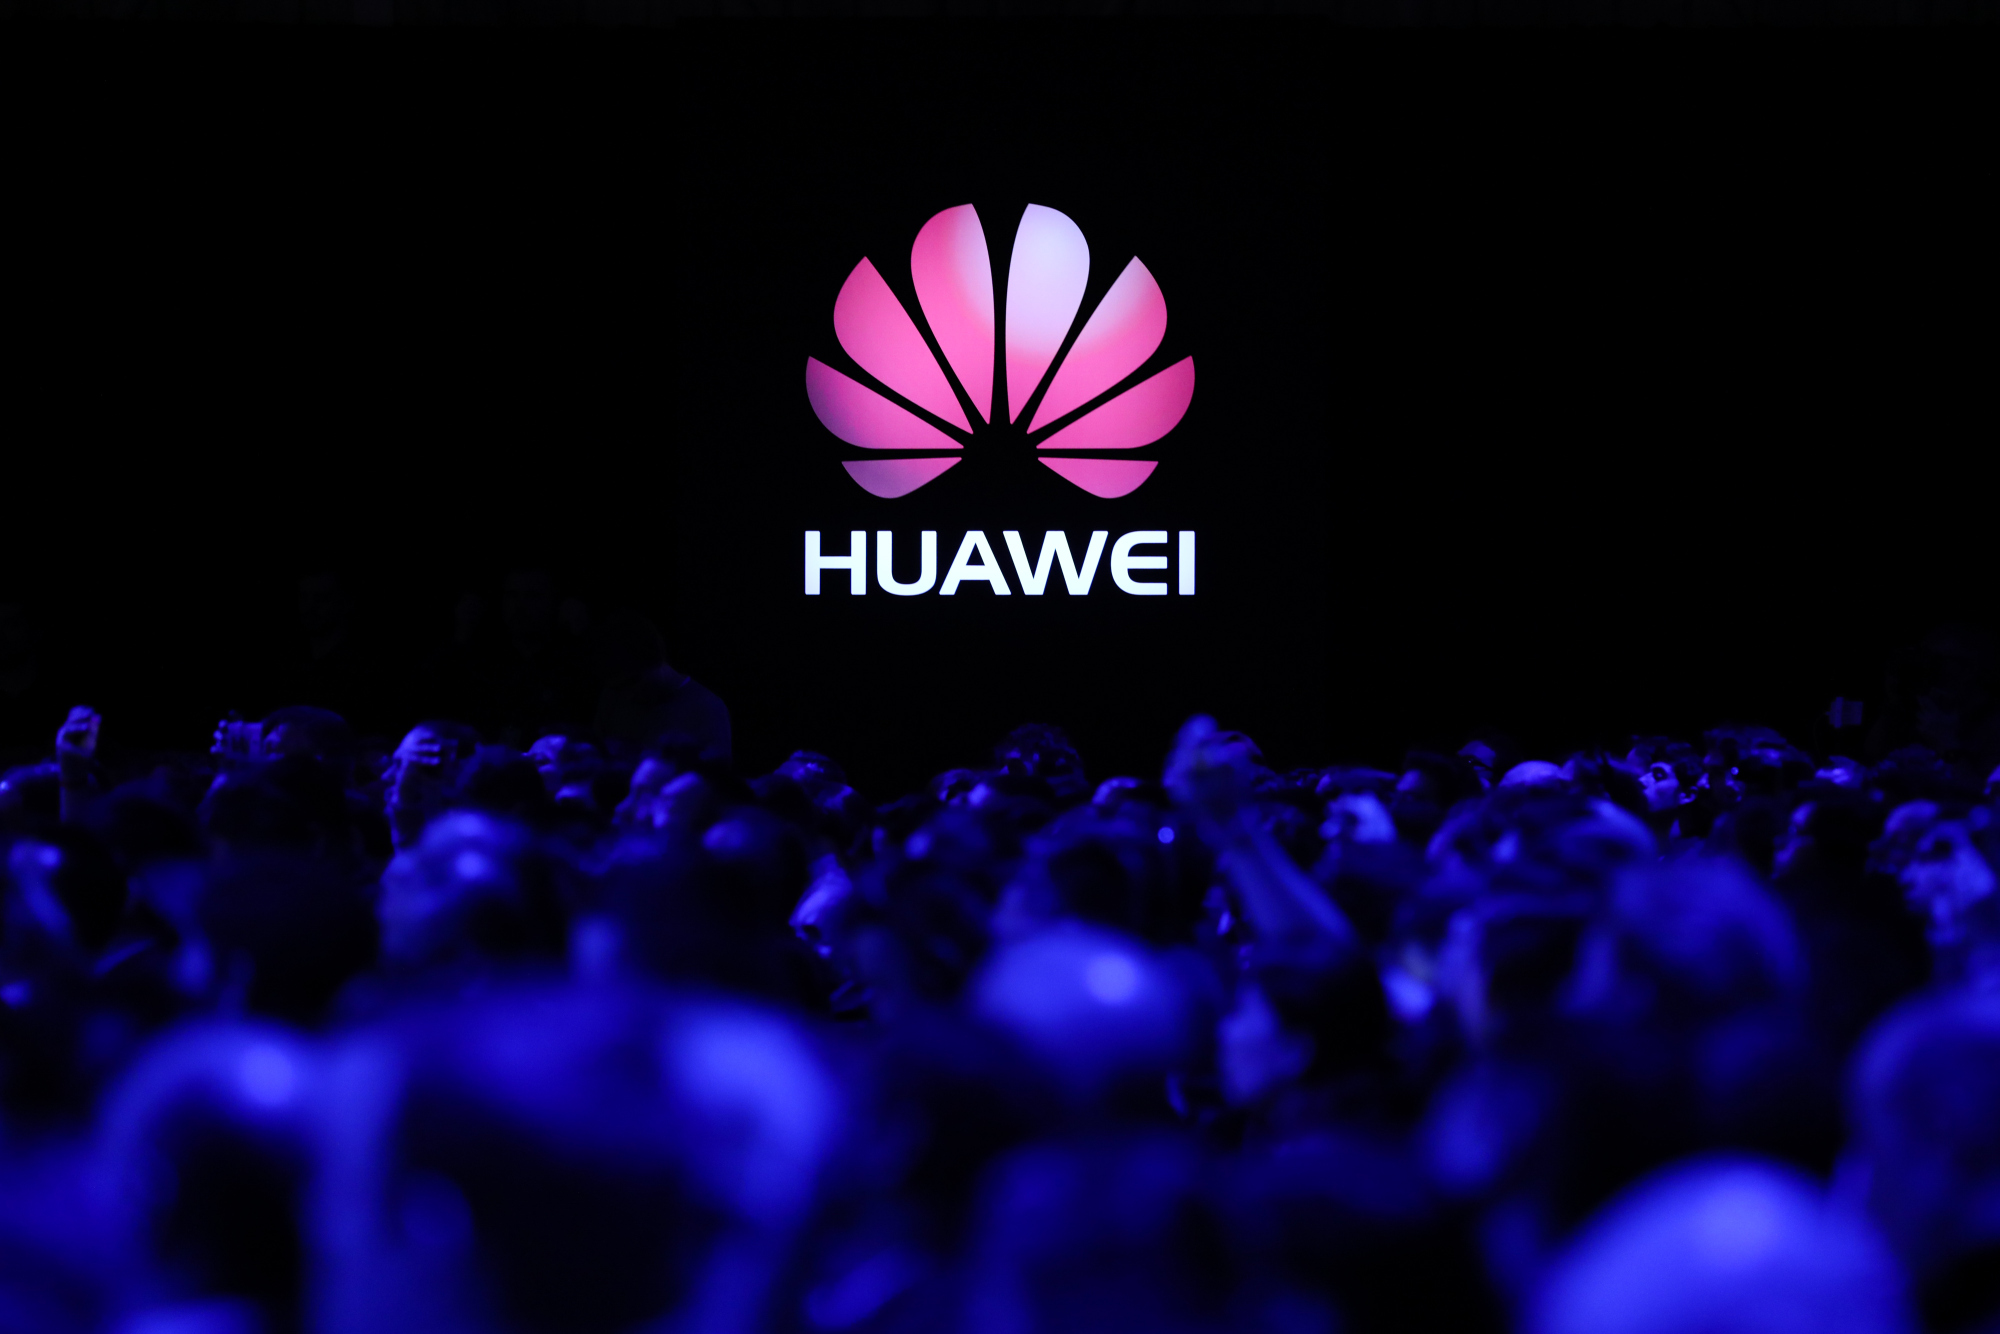 Huawei-k AEBetako patentearen arau-haustea kobratzen du
